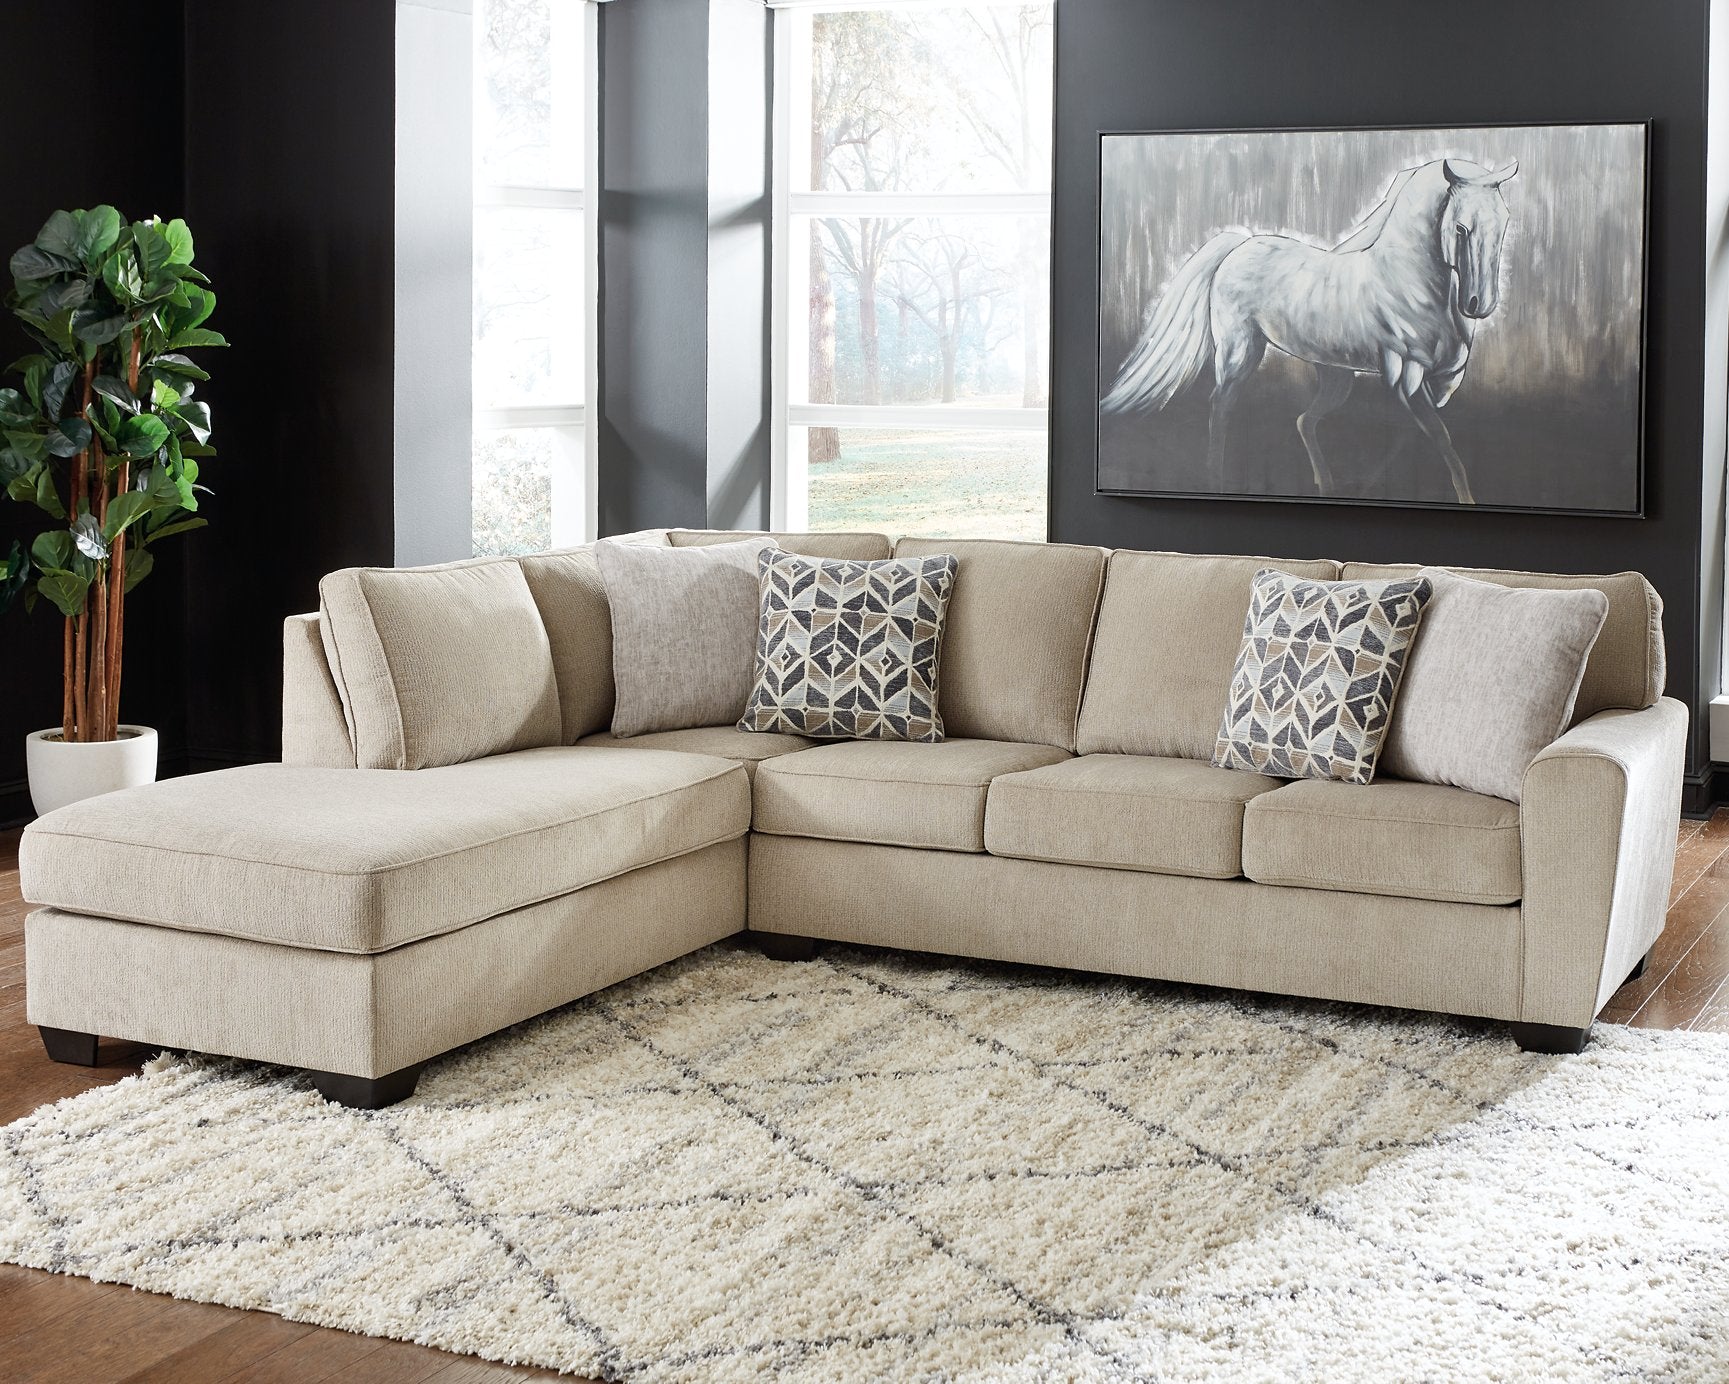 Decelle Living Room Set - Half Price Furniture